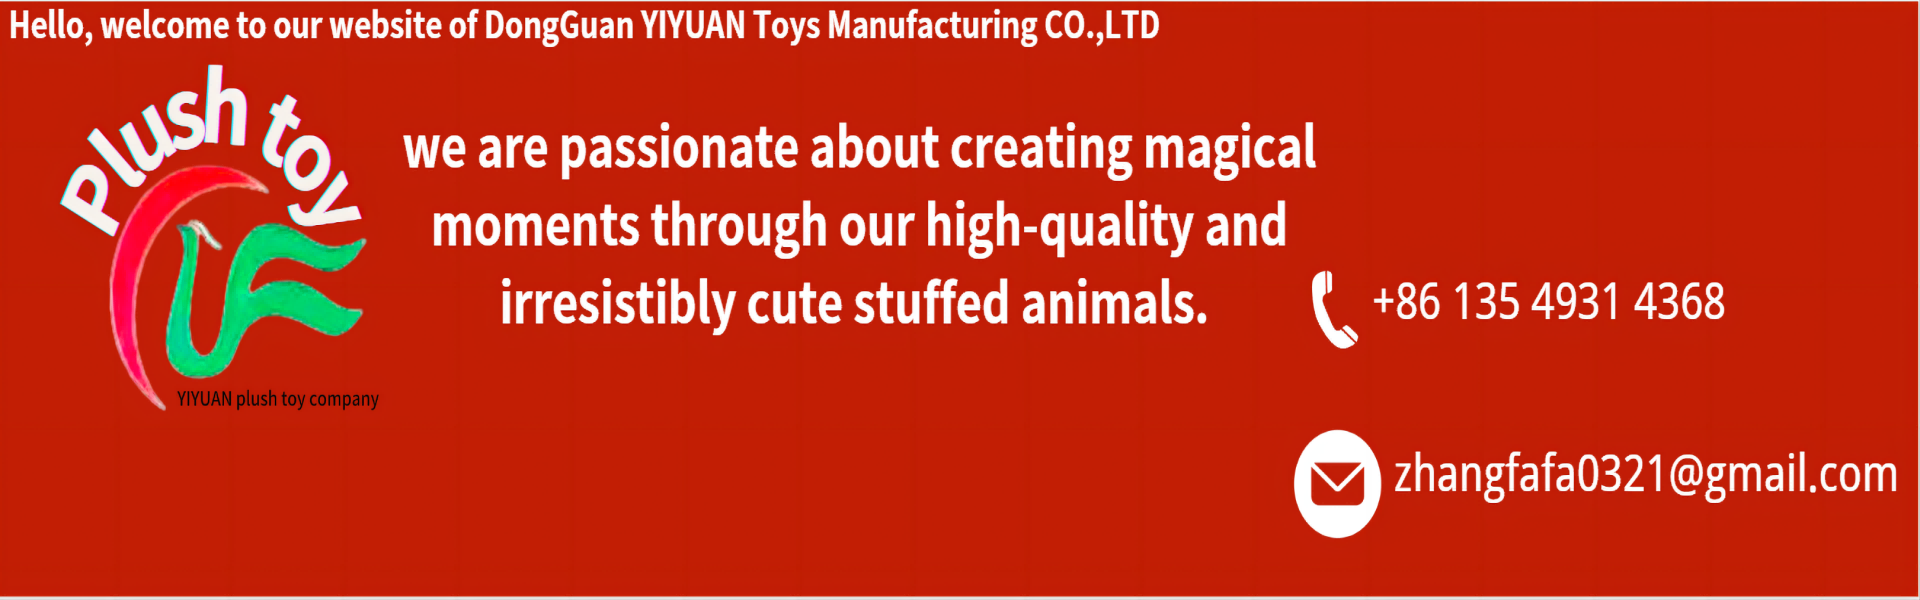 Brinquedos de pelúcia, equipes de alta qualidade, equipes profissionais,yiyuan plush toy company